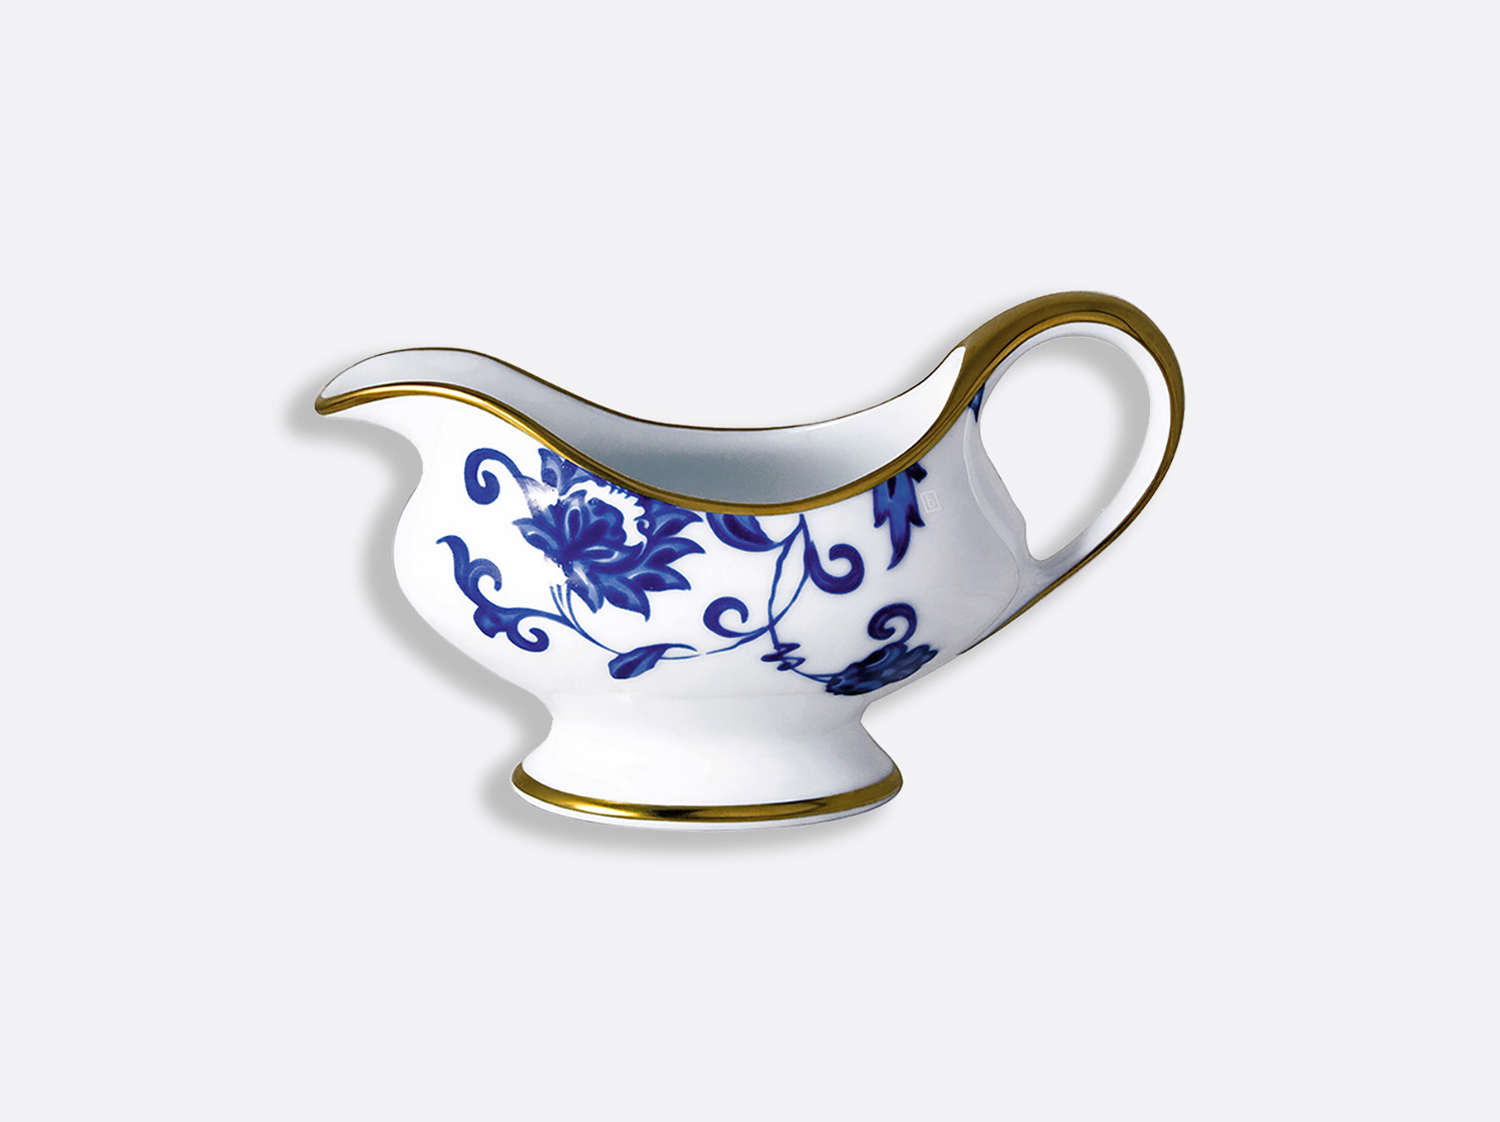 Saucière 25 cl en porcelaine de la collection Prince bleu Bernardaud